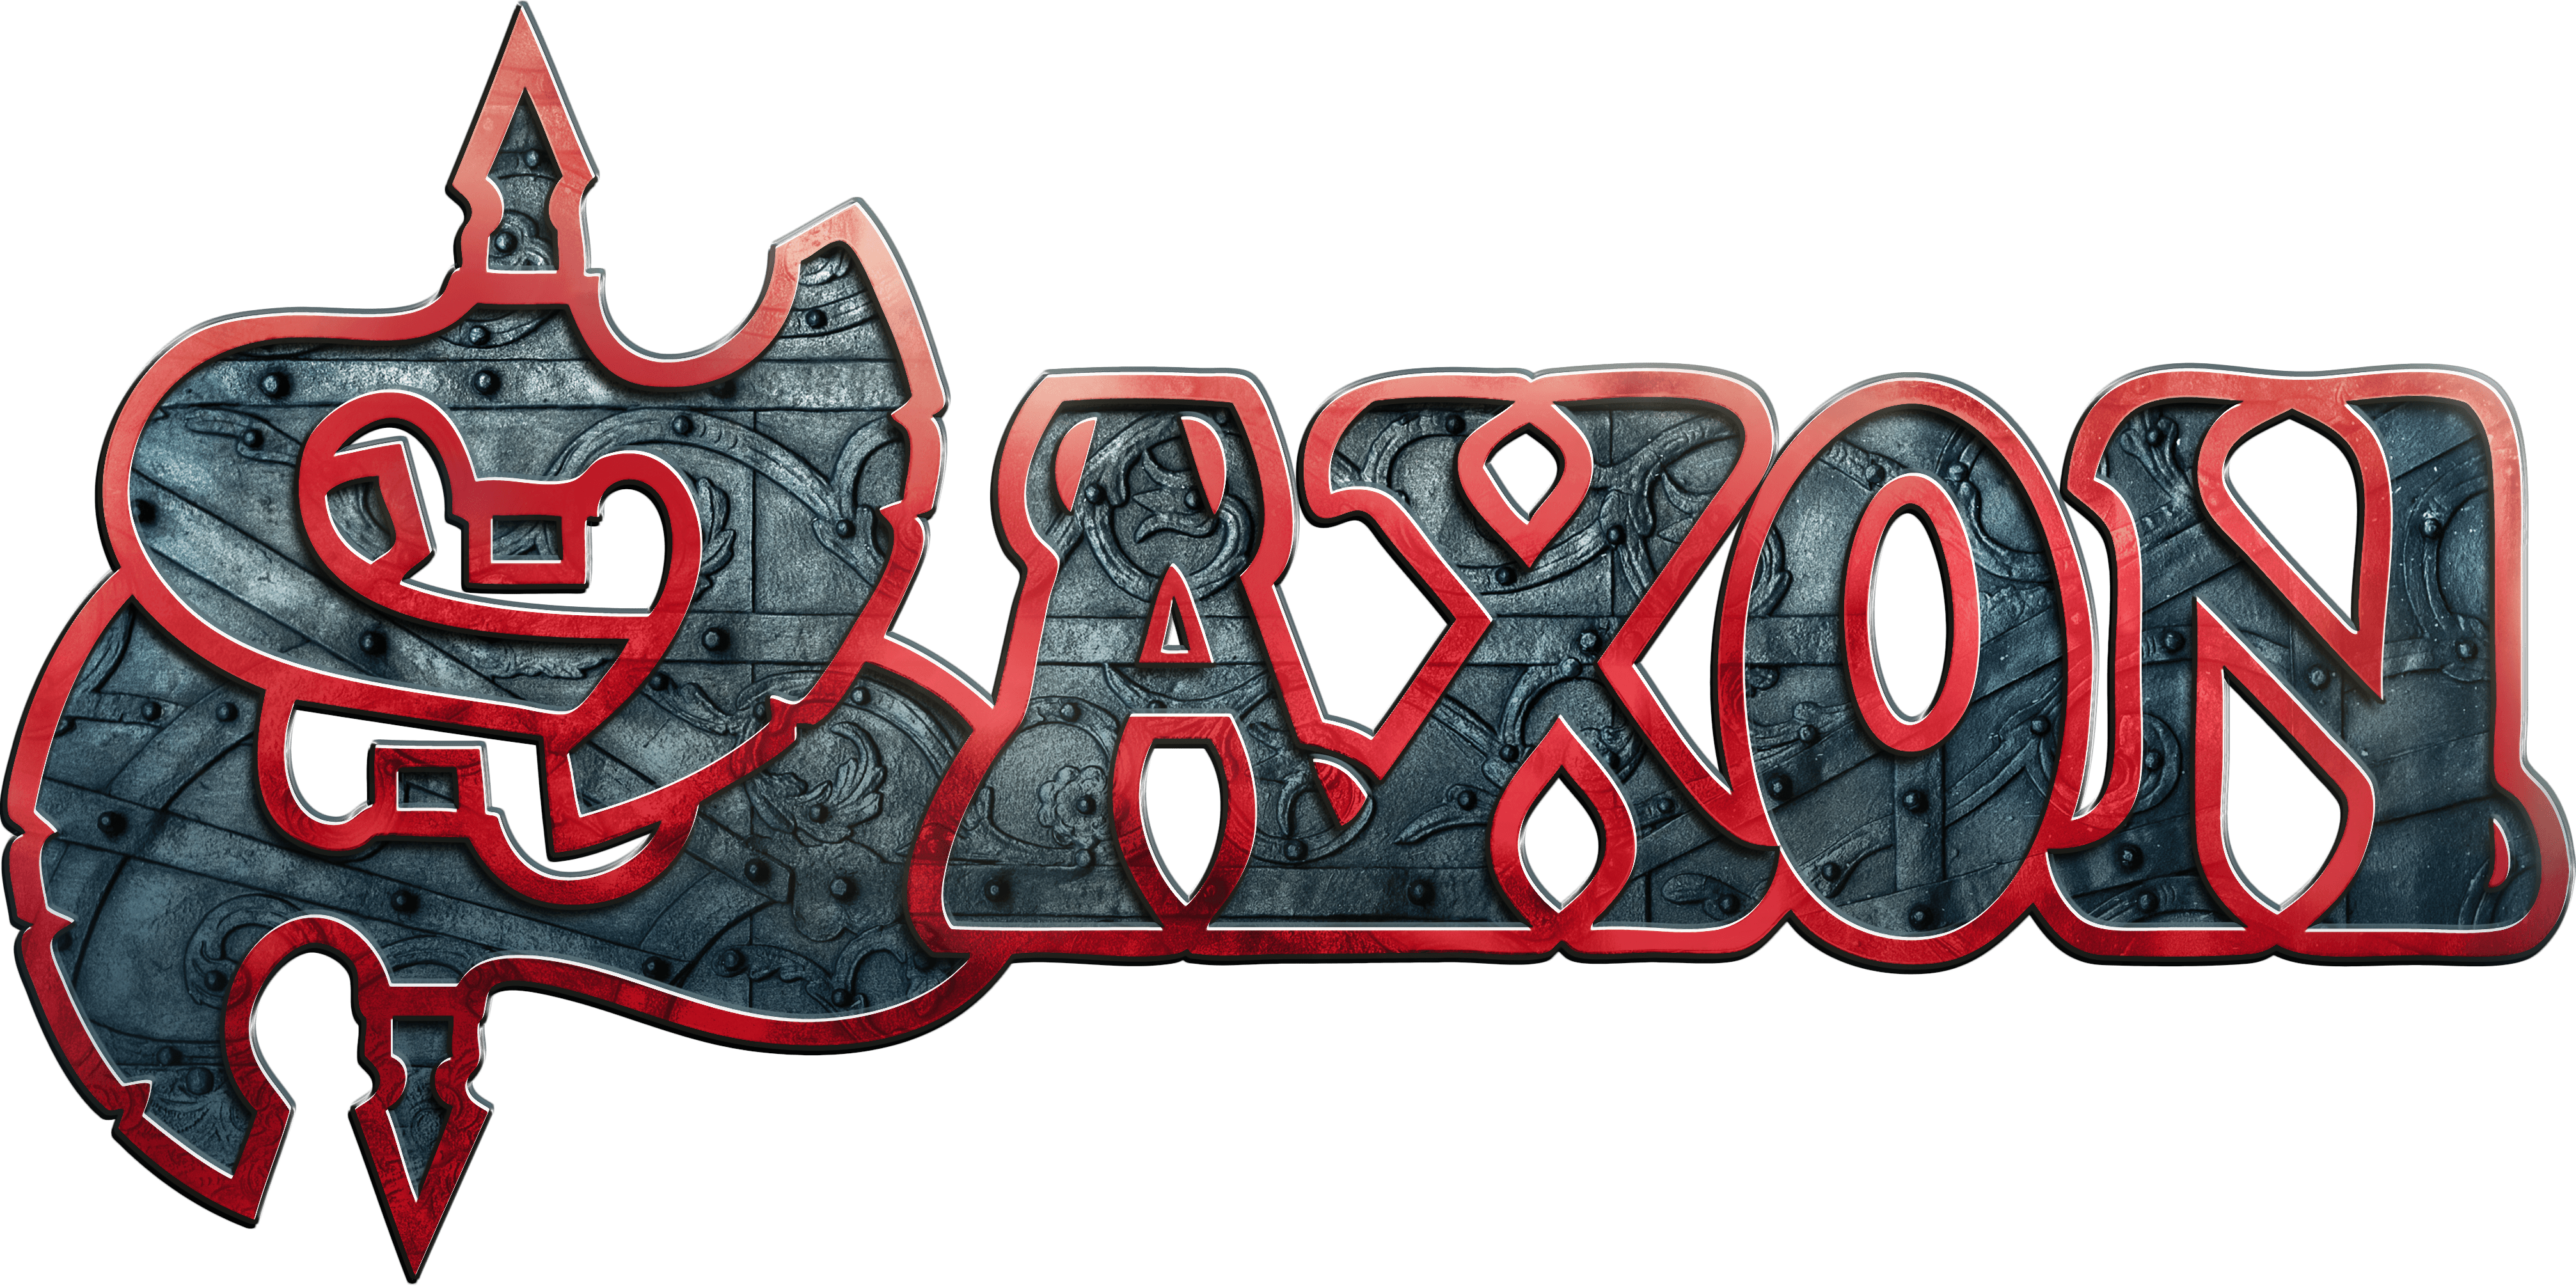 Saxon Logo Wotr 4027x2011 #saxon